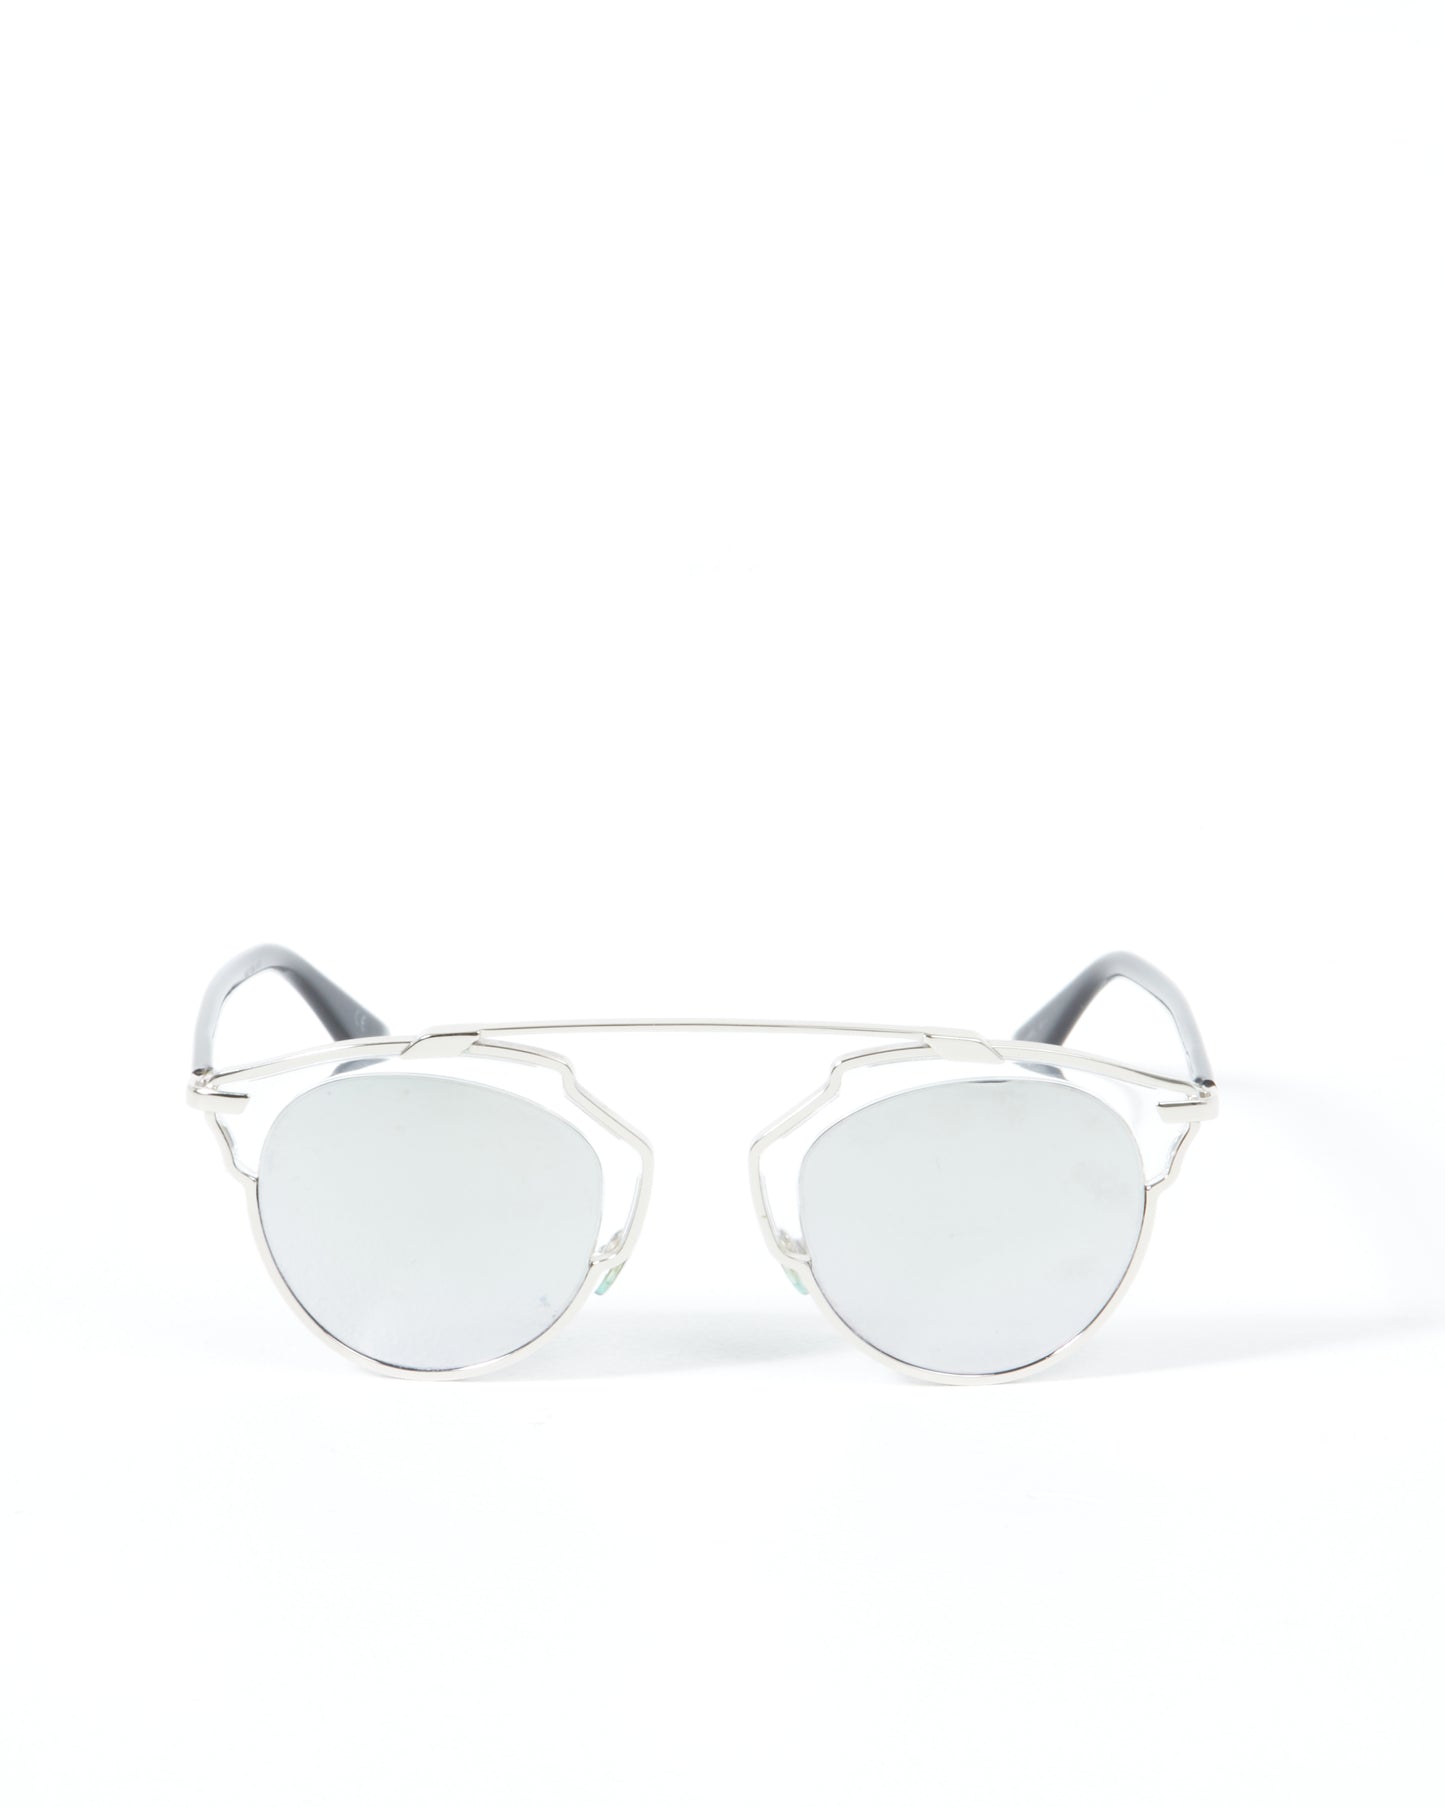 Dior Silver So Real Sunglasses